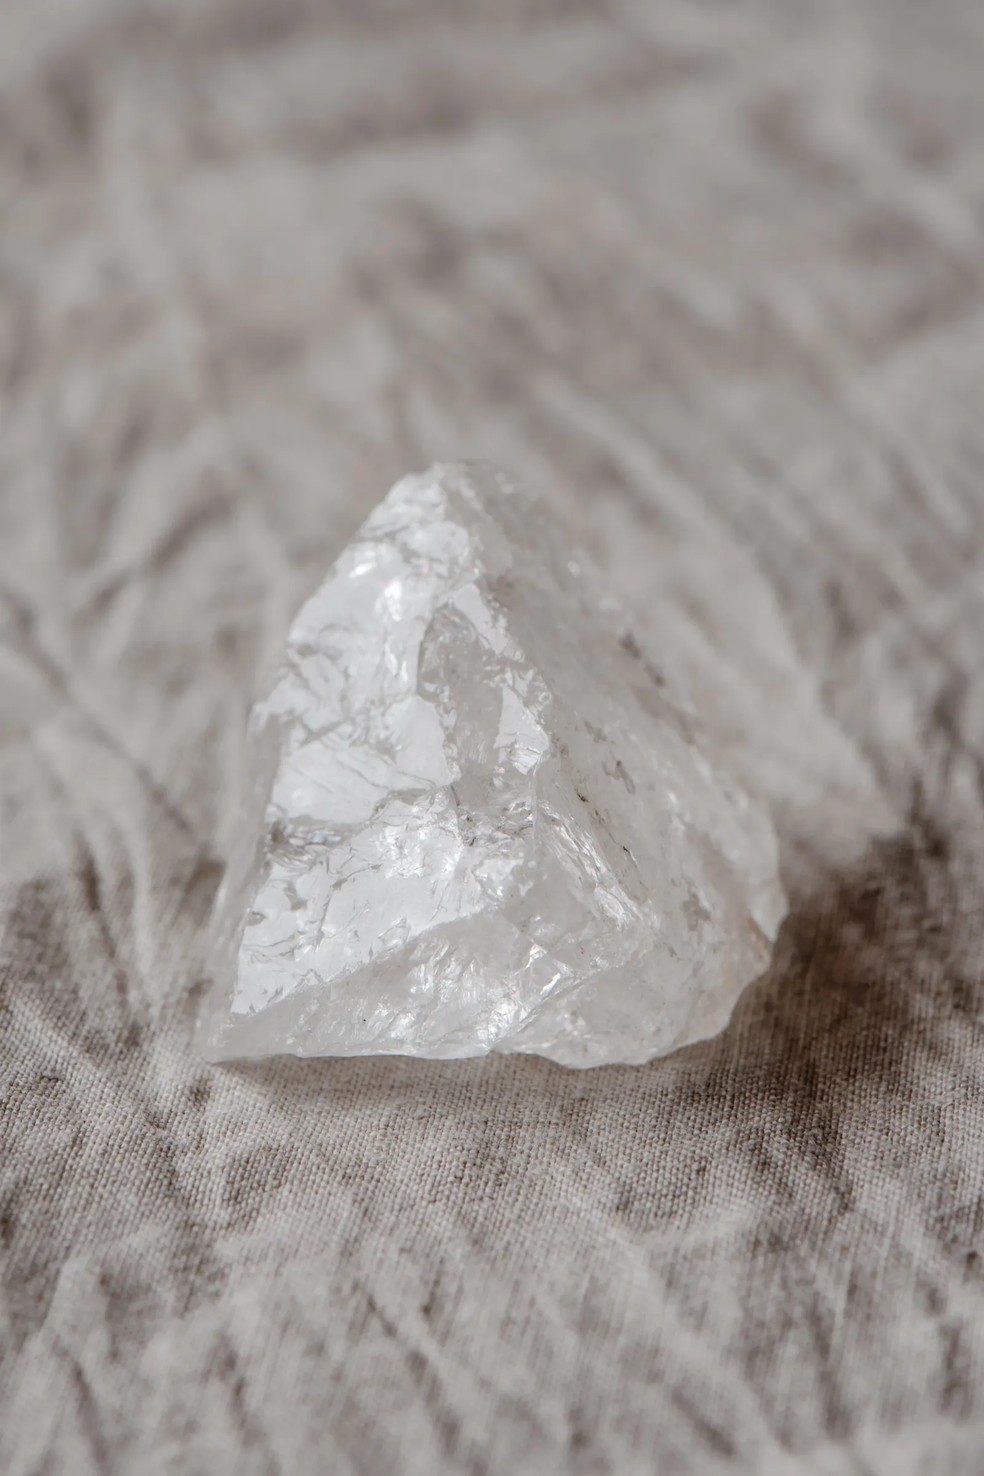 A pureza do seu quartzo é um sinal que indica se ele é ou não um quartzo verdadeiro — Foto: Eva Bronzini/Pexels